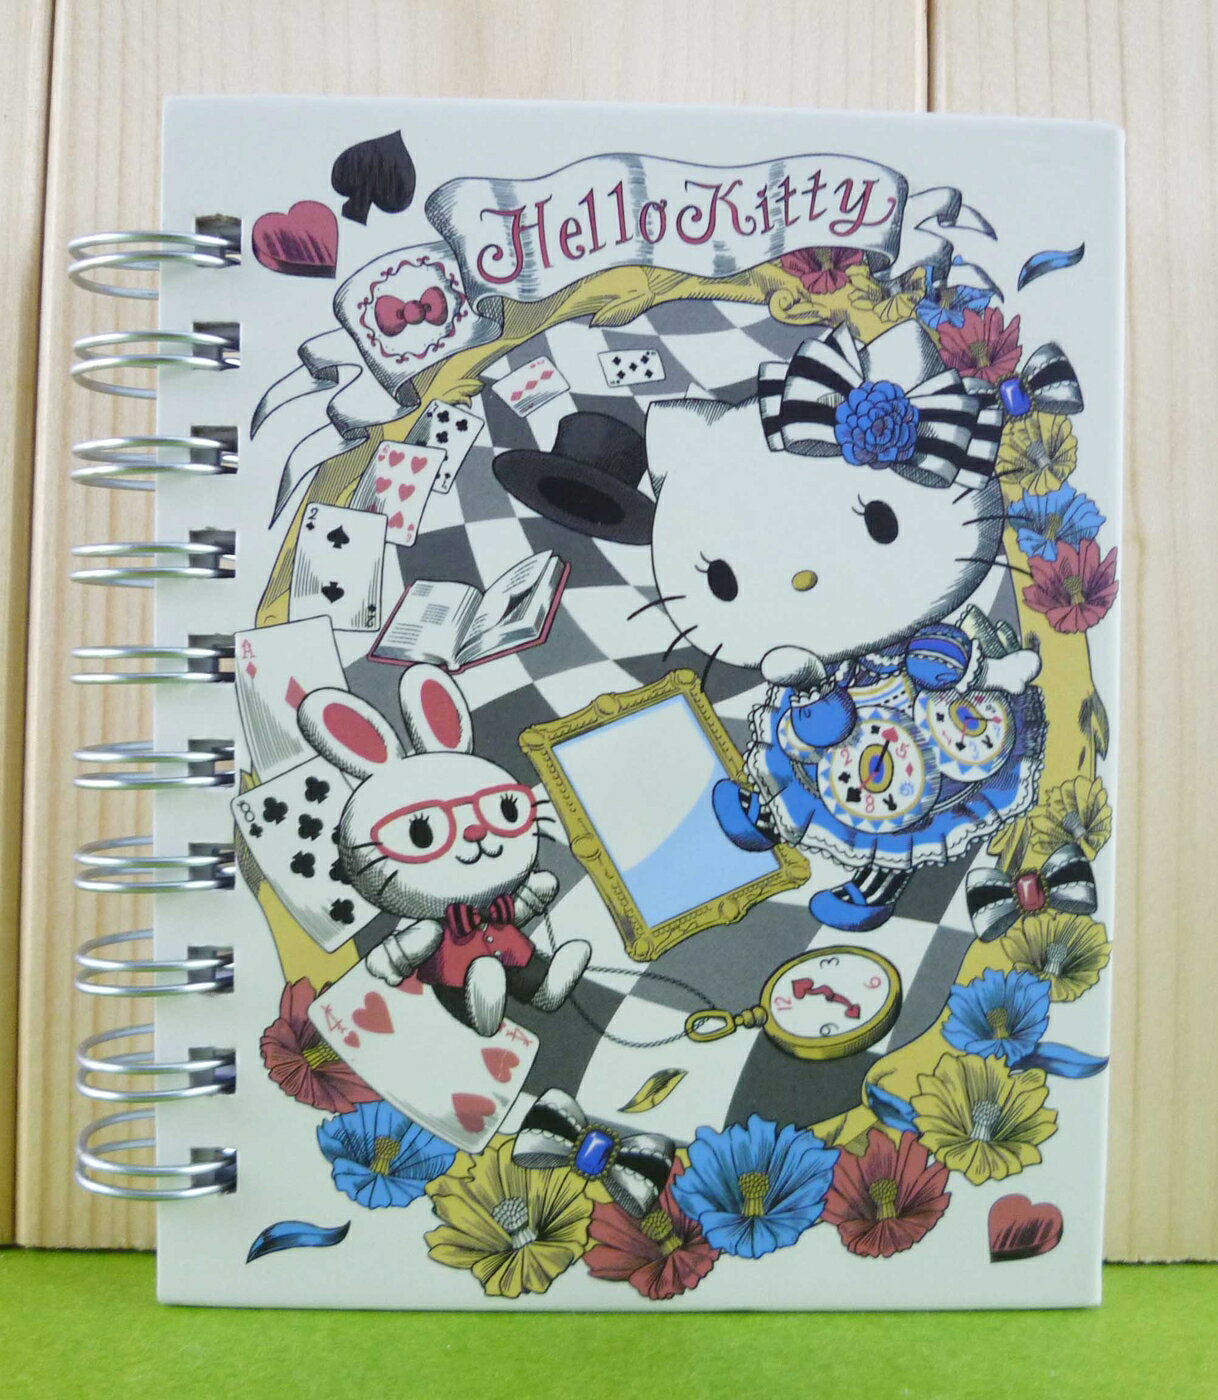 【震撼精品百貨】Hello Kitty 凱蒂貓 筆記本 艾莉絲【共1款】 震撼日式精品百貨